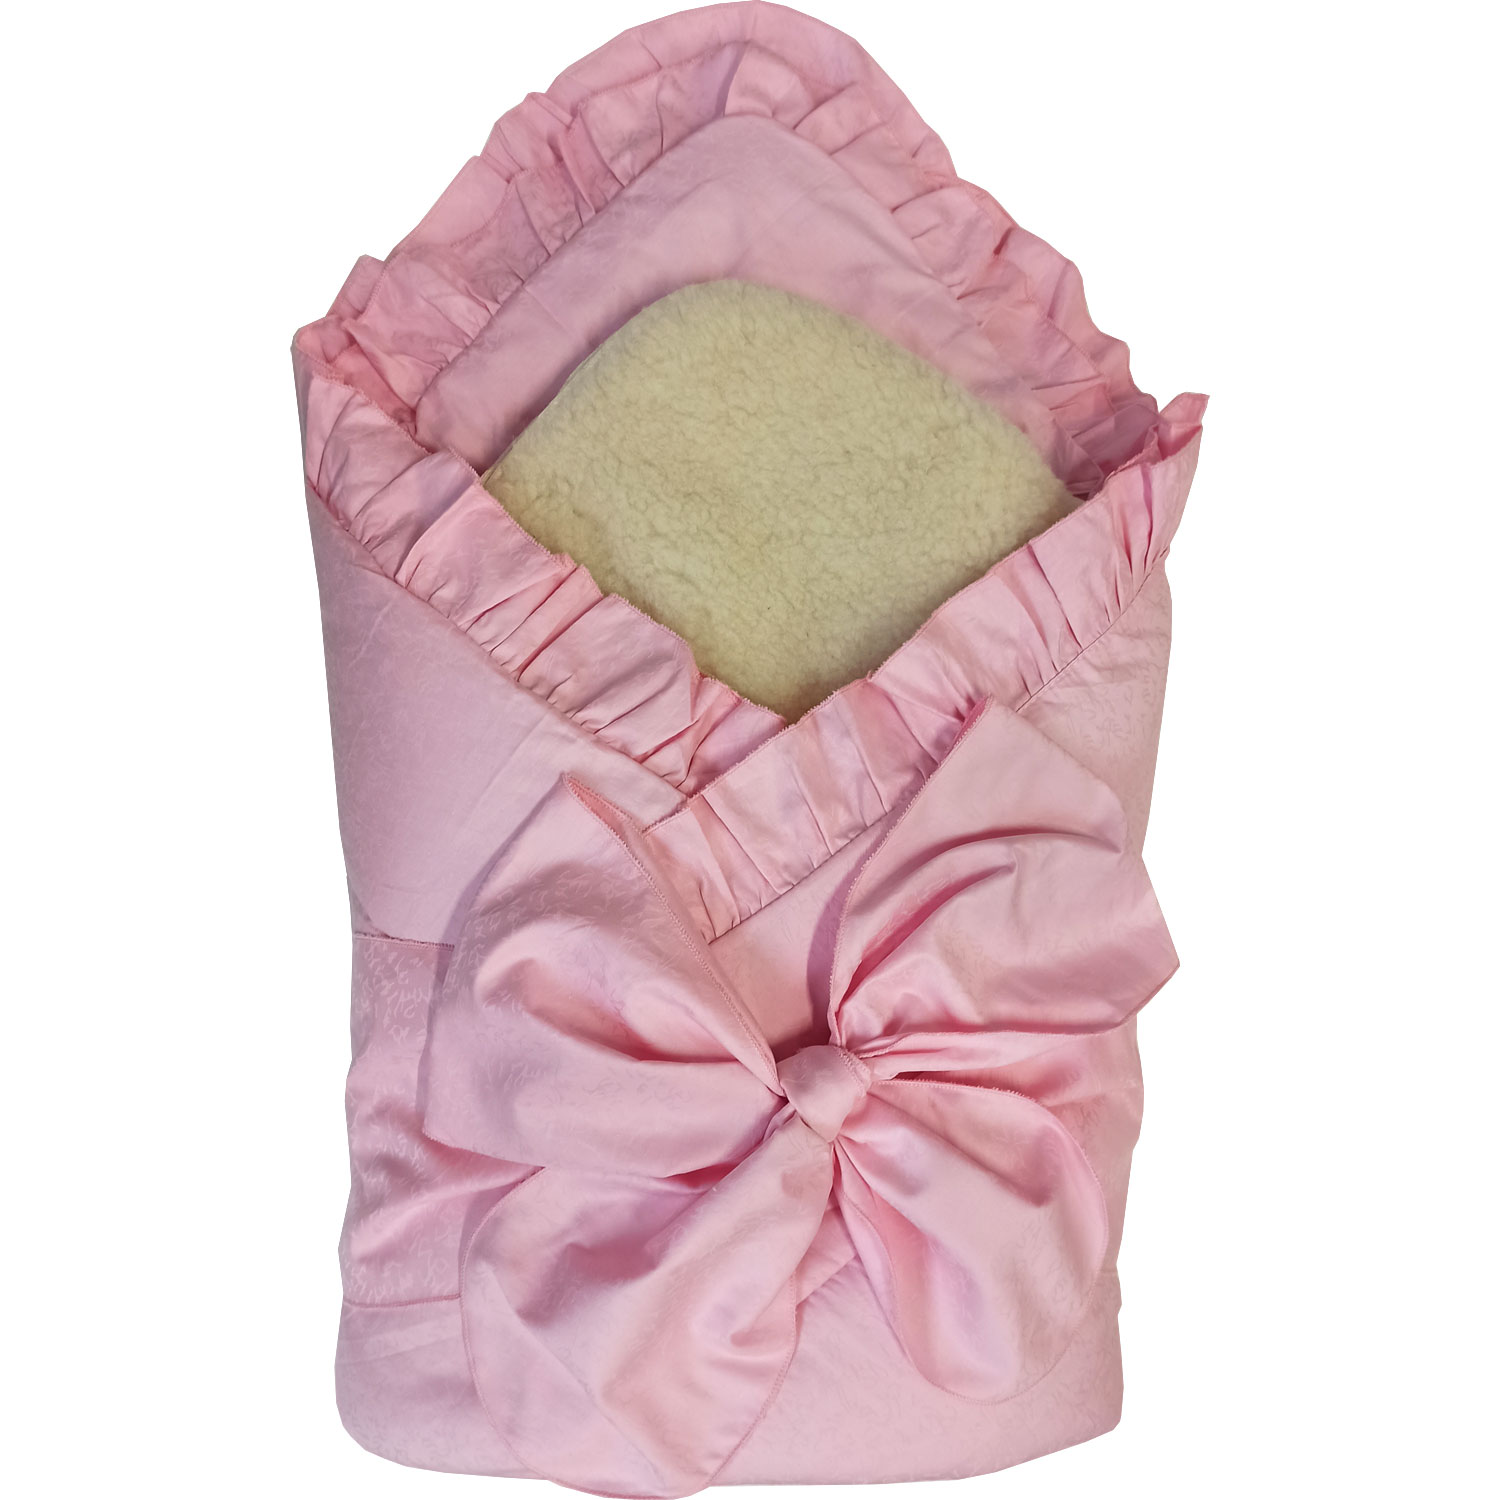 Конверт-одеяло Папитто с завязкой Розовый 2153 папитто конверт одеяло с завязкой и меховой вставкой